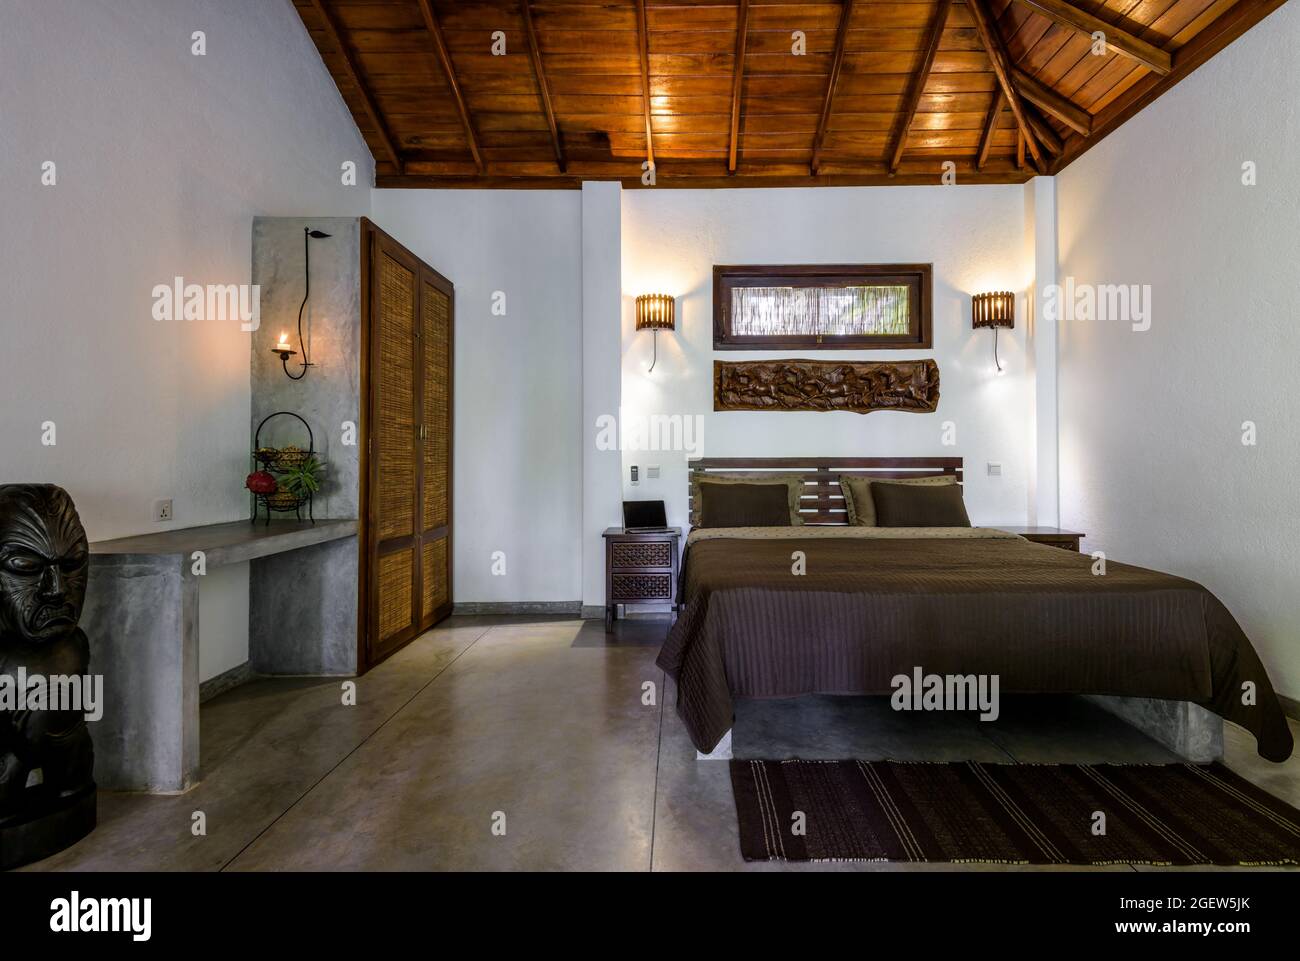 Tangalle, Sri Lanka – 31 octobre 2017 : intérieur d'un hôtel ou d'une maison résidentielle, chambre avec lit, mobilier en bois et plafond. Chambre à coucher intérieur à Indian mi Banque D'Images